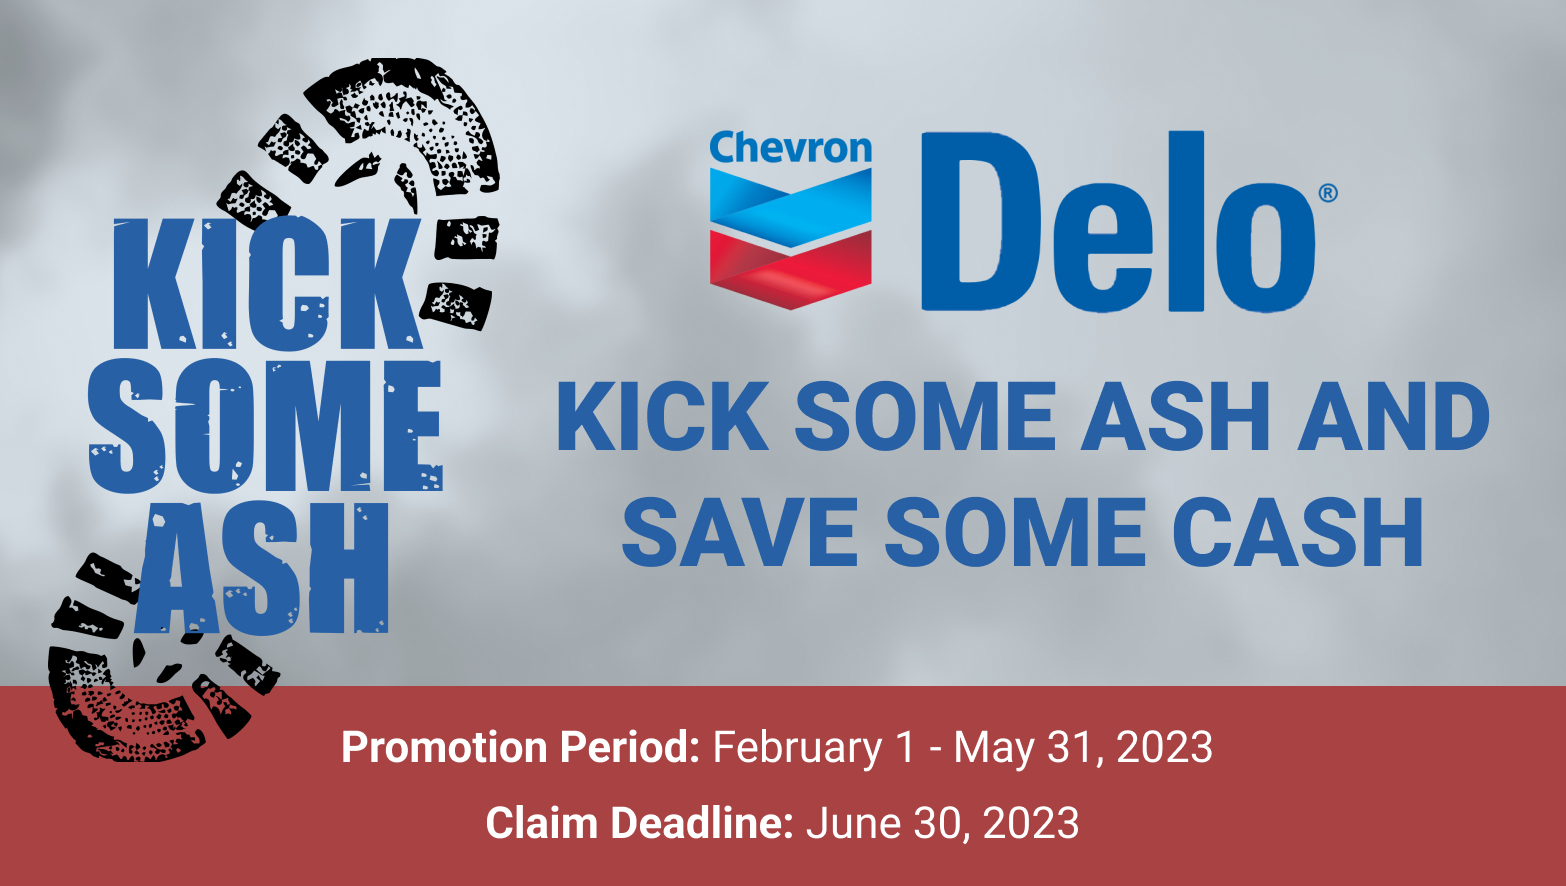 Chevron Delo rebate promo